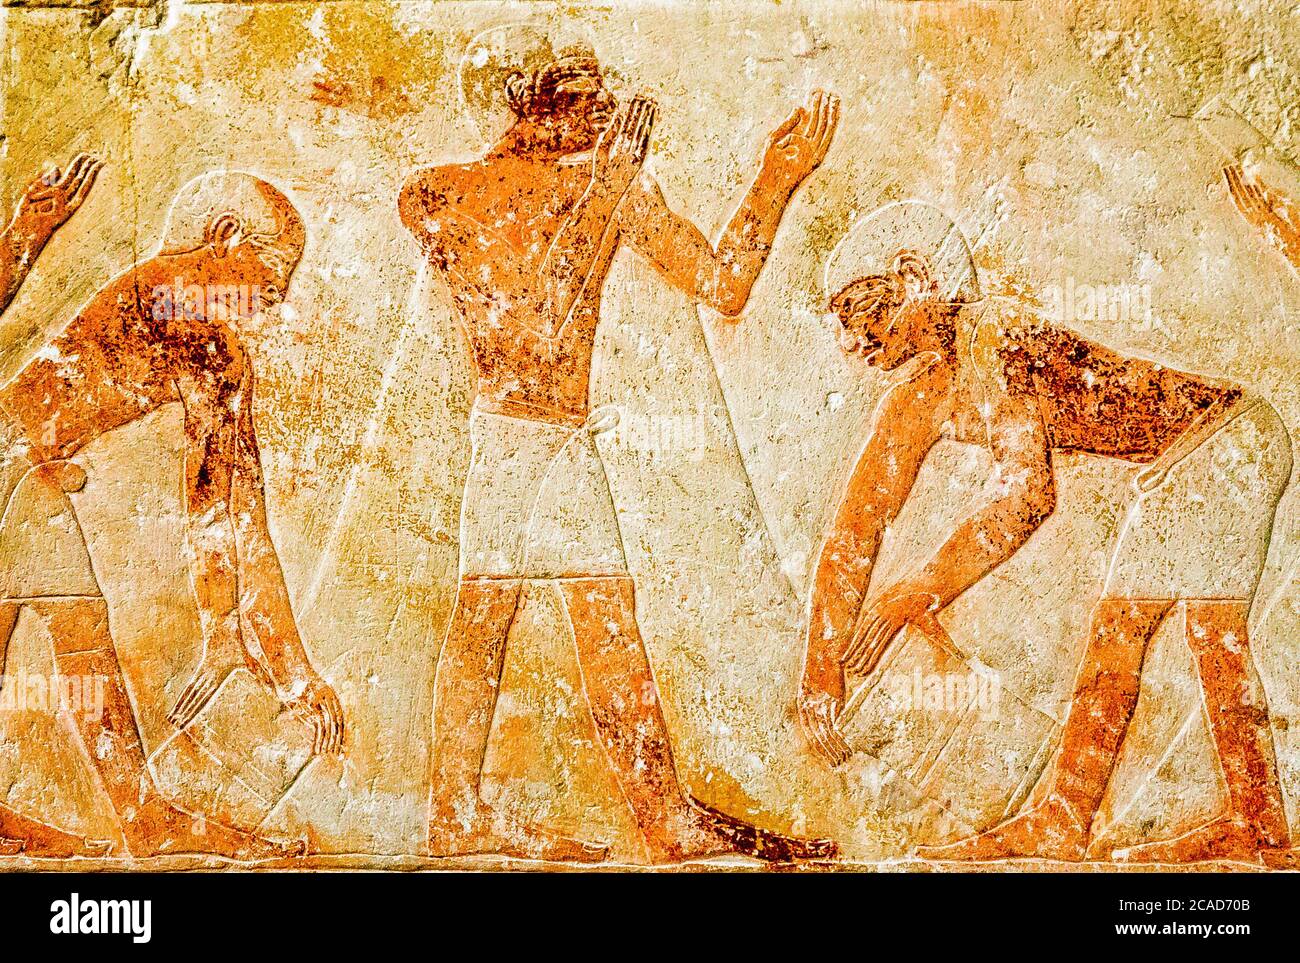 Egypte, le Caire, Musée égyptien, du tombeau de Kaemrehu, Saqqara, détail d'un grand relief représentant la scène agricole : mesurer la récolte. Banque D'Images